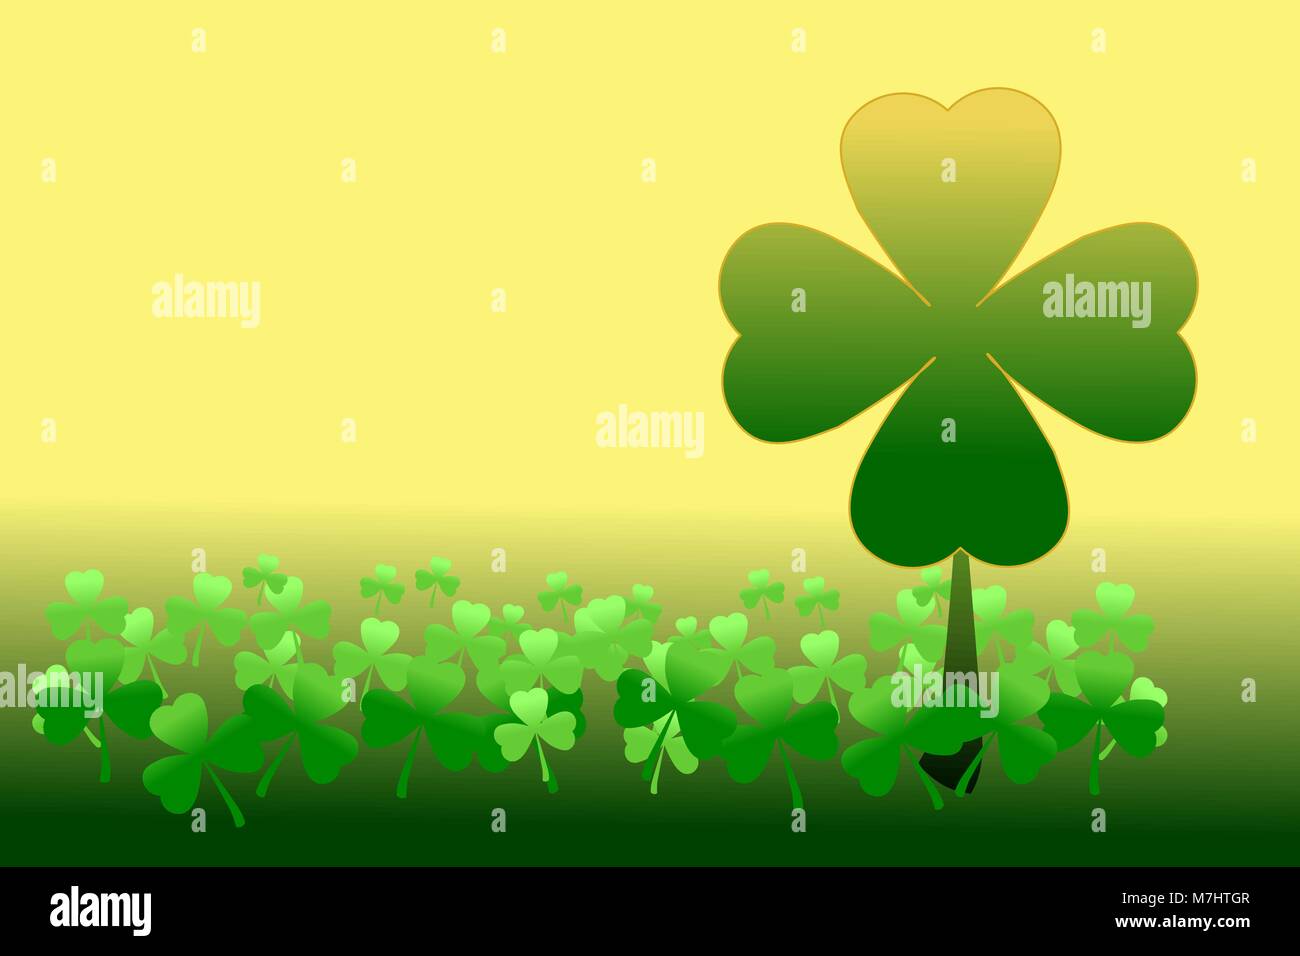 Happy Saint Patrick's day. Schéma des trèfles, trèfle 4 feuilles parmi les trèfles 3 feuilles or et vert sur fond dégradé. Vector illustration. Illustration de Vecteur